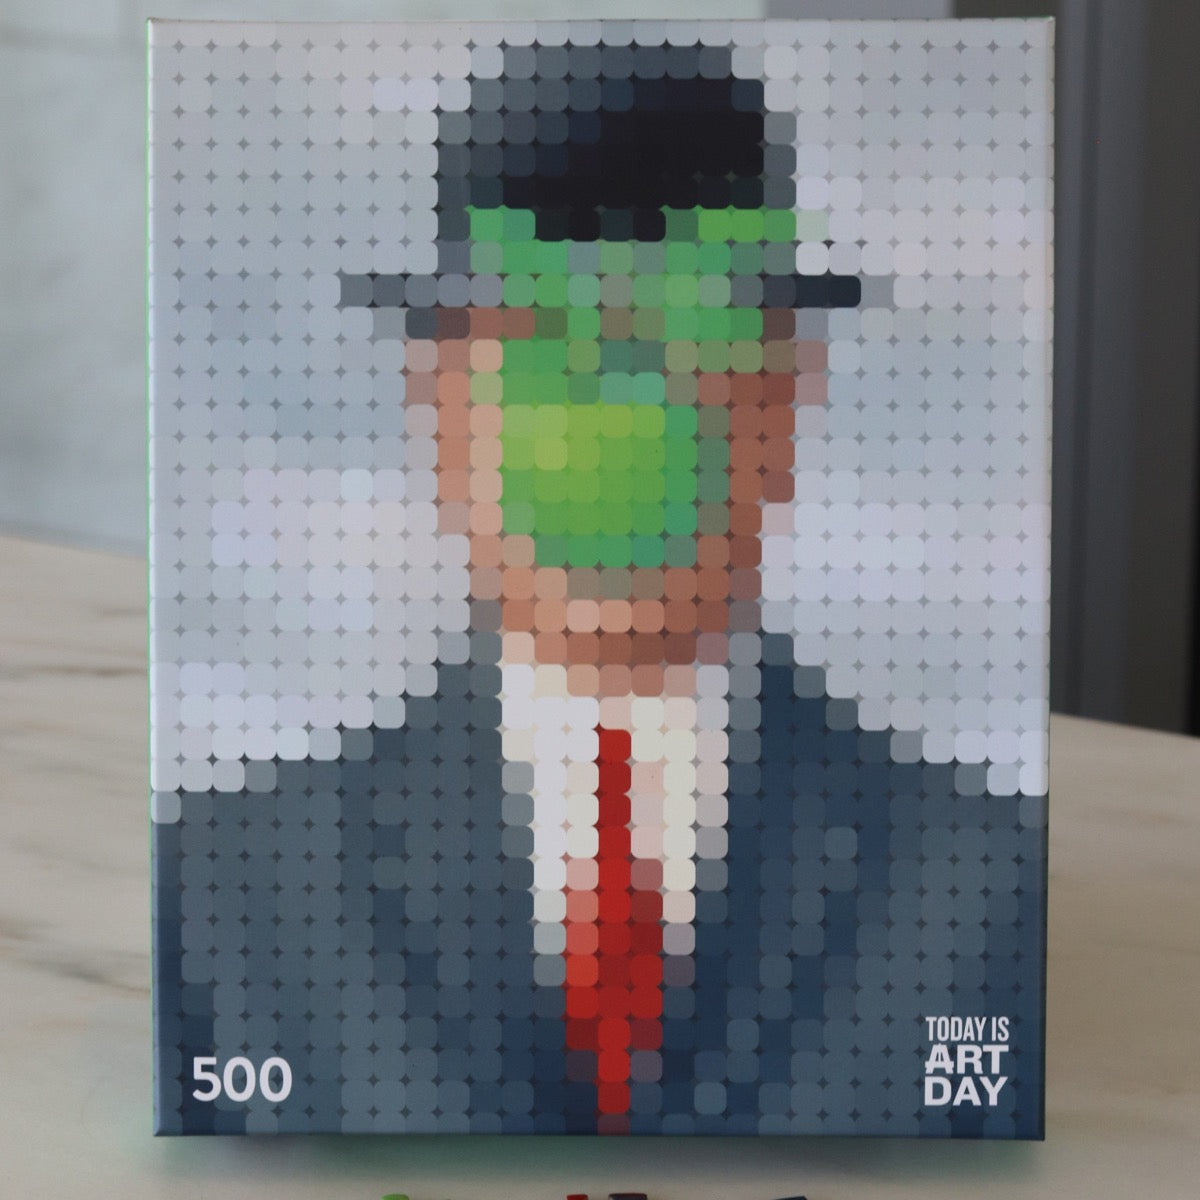 Son of Man - René Magritte - Pixel Art - Puzzle